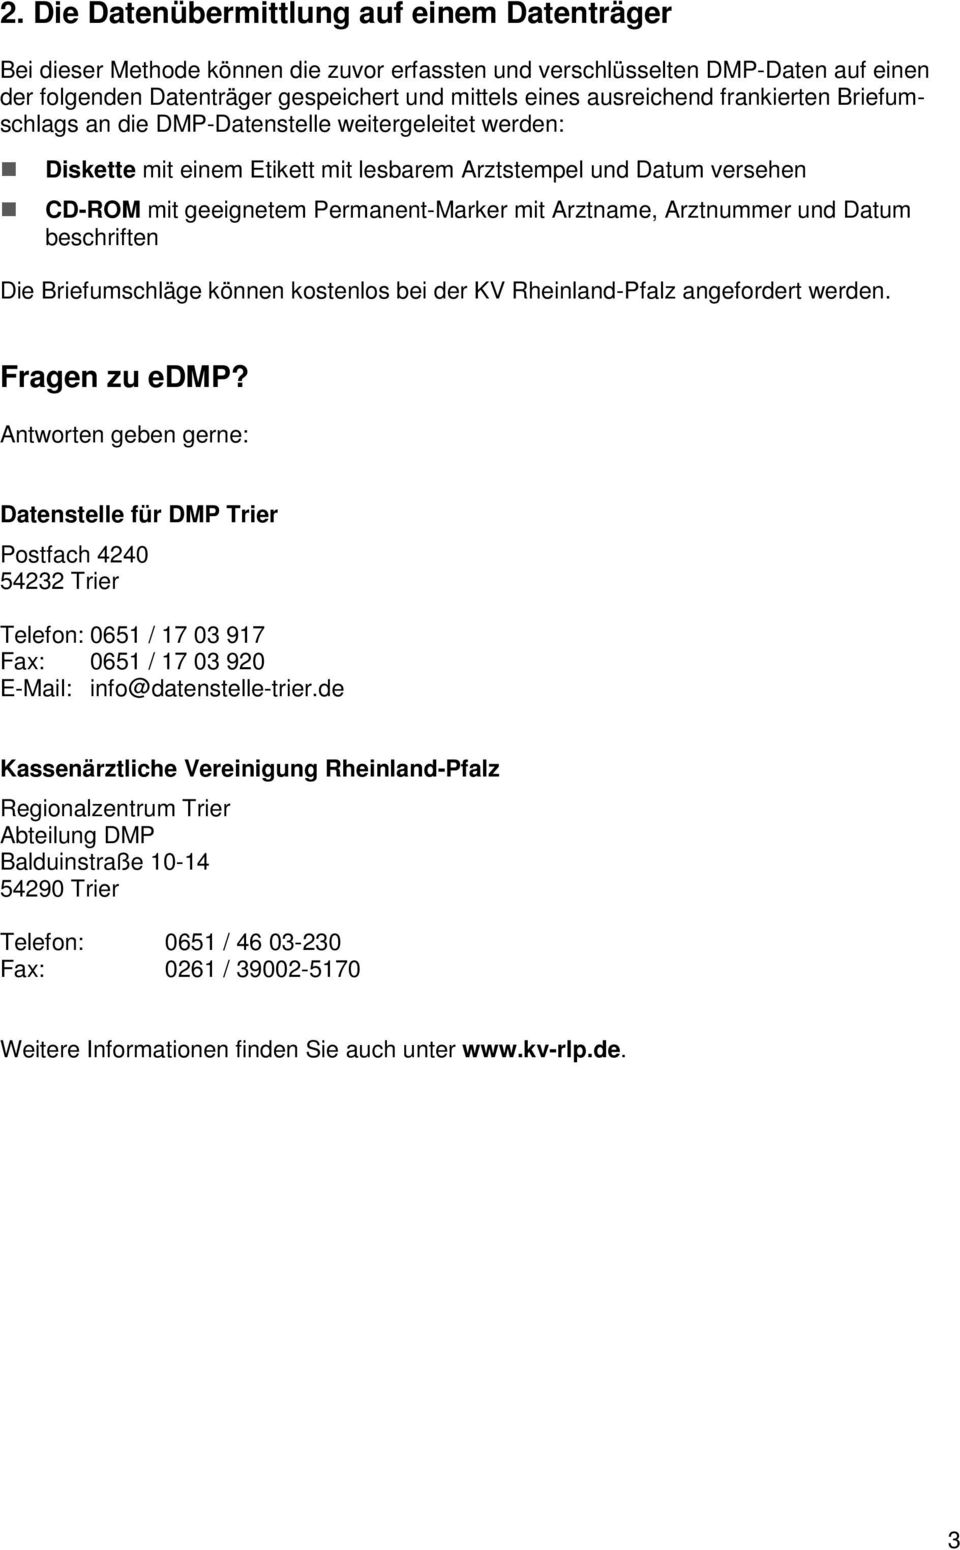 Arztname, Arztnummer und Datum beschriften Die Briefumschläge können kostenlos bei der KV Rheinland-Pfalz angefordert werden. Fragen zu edmp?